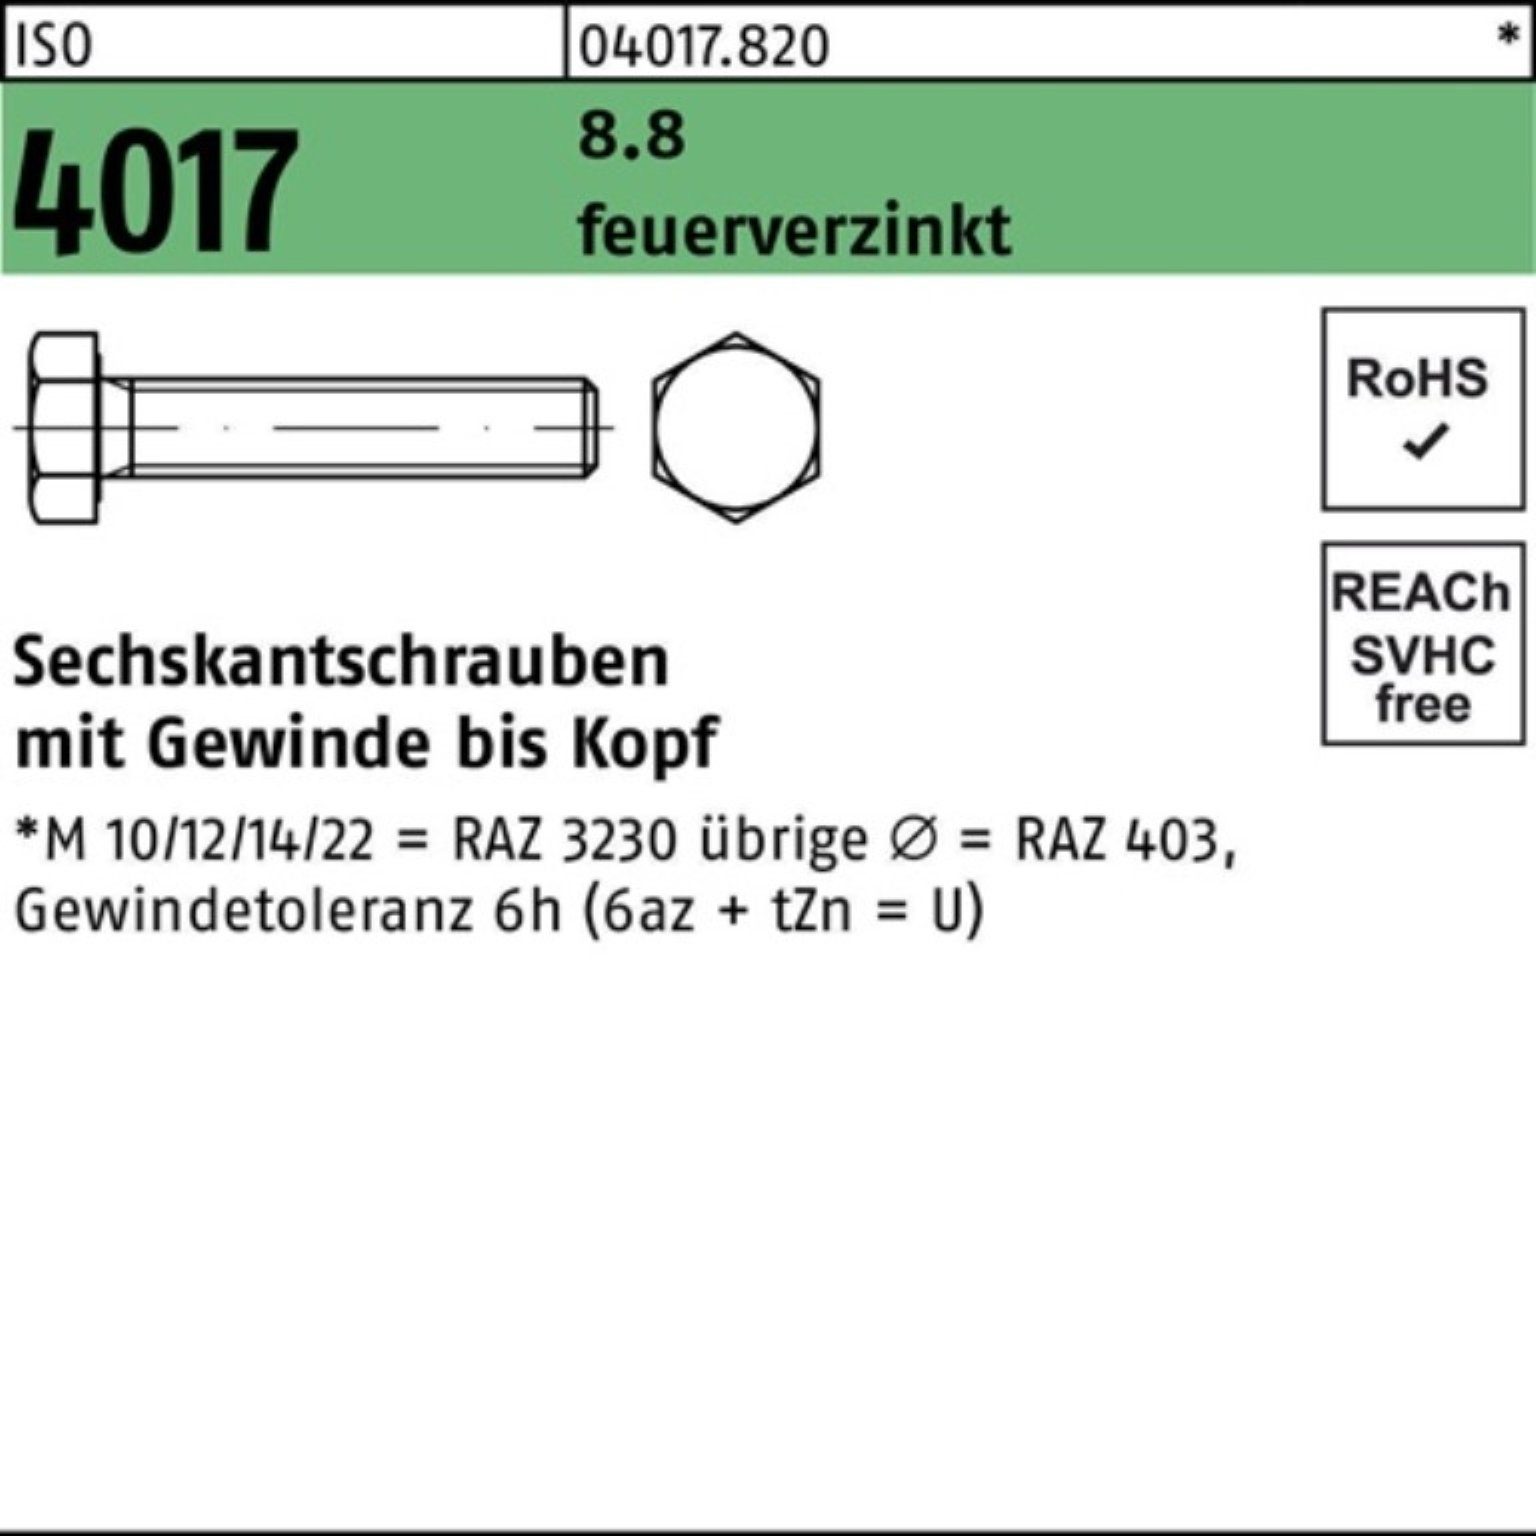 Bufab Sechskantschraube 100er Pack Sechskantschraube ISO 4017 VG M12x 50 8.8 feuerverz. 100 St